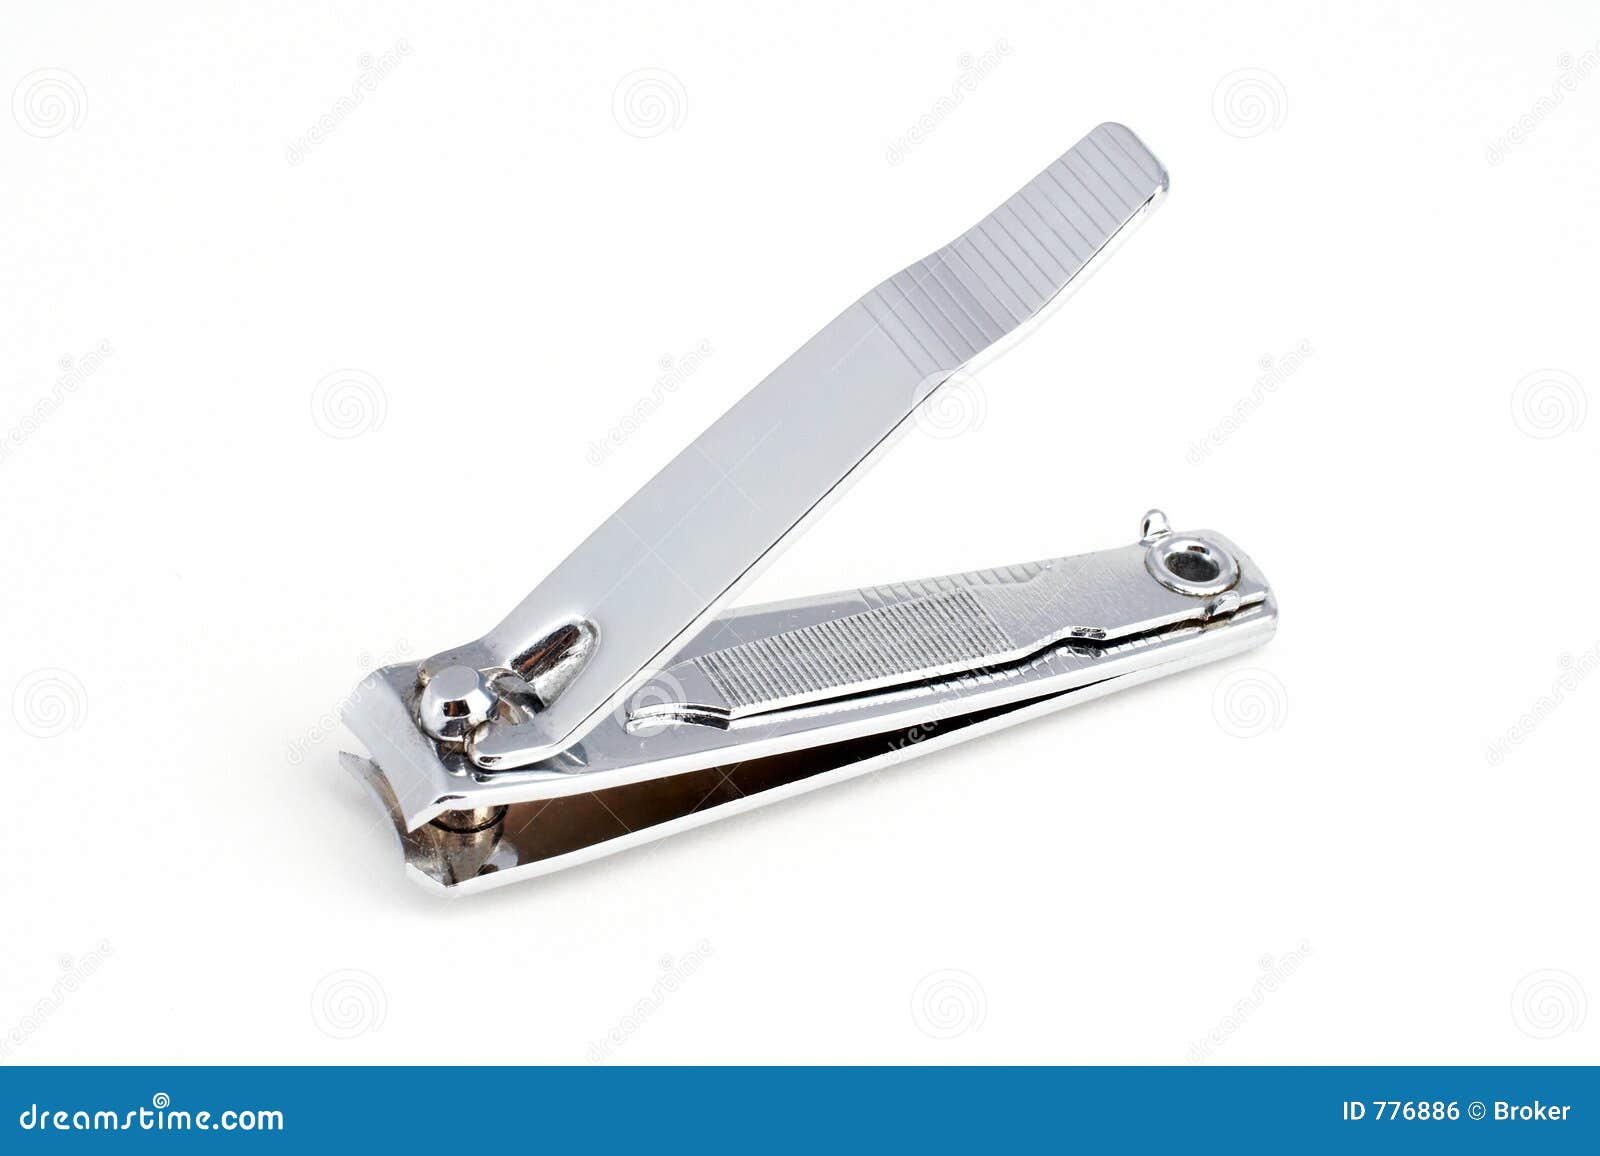 clipart nail cutter - photo #12